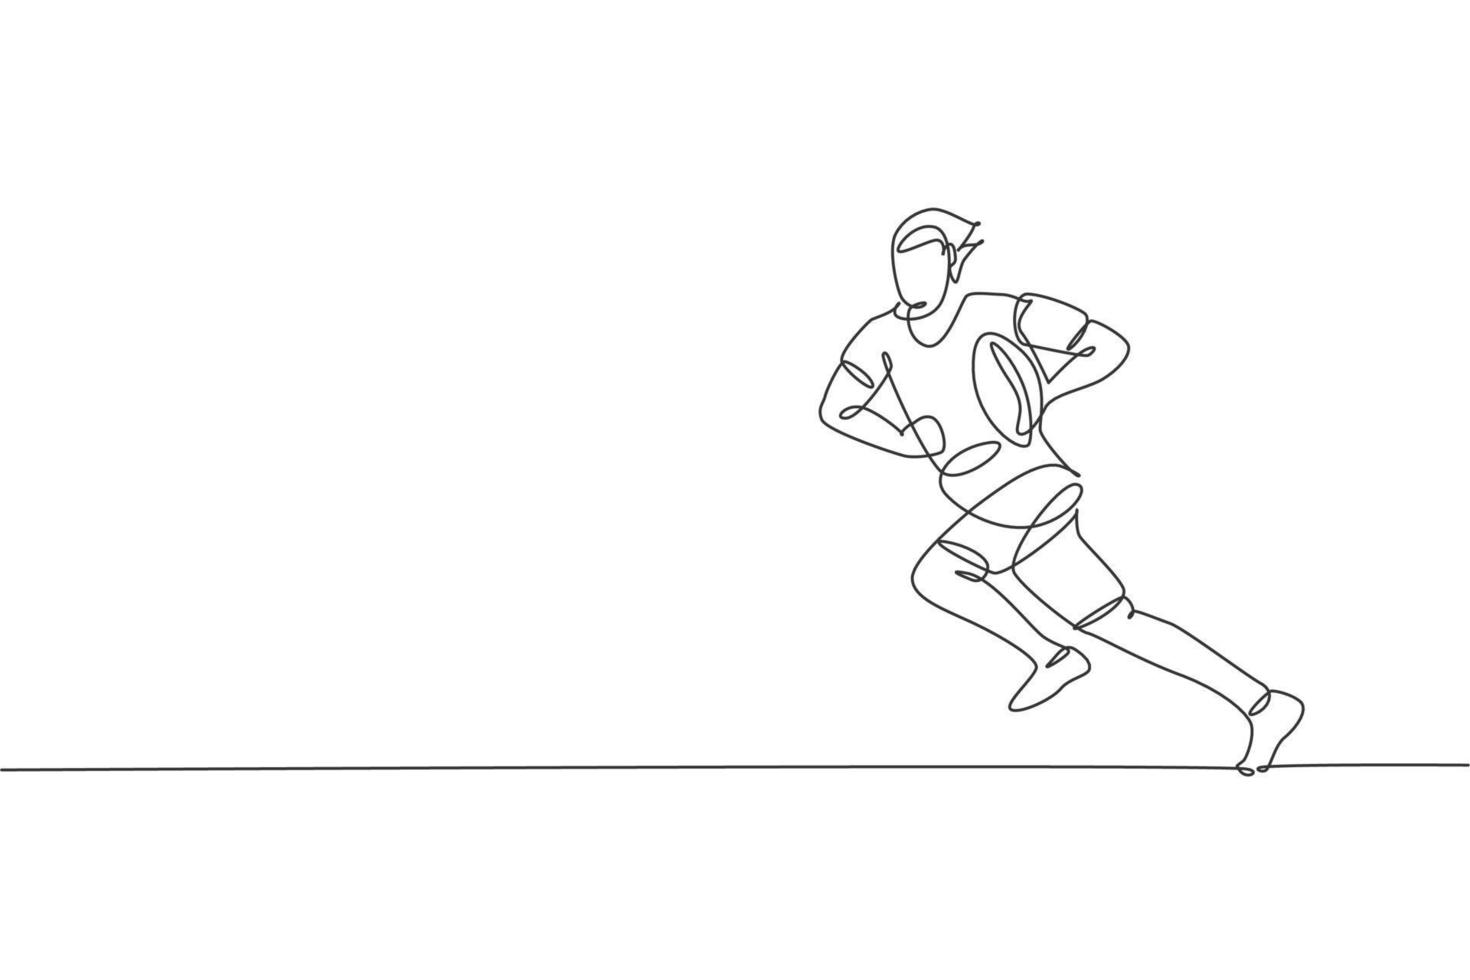 en enda linjeteckning av ung energisk manlig rugbyspelare som springer och håller bollen vektorillustration. hälsosam sport koncept. modern kontinuerlig linjeritningsdesign för rugbyturneringsbanner vektor